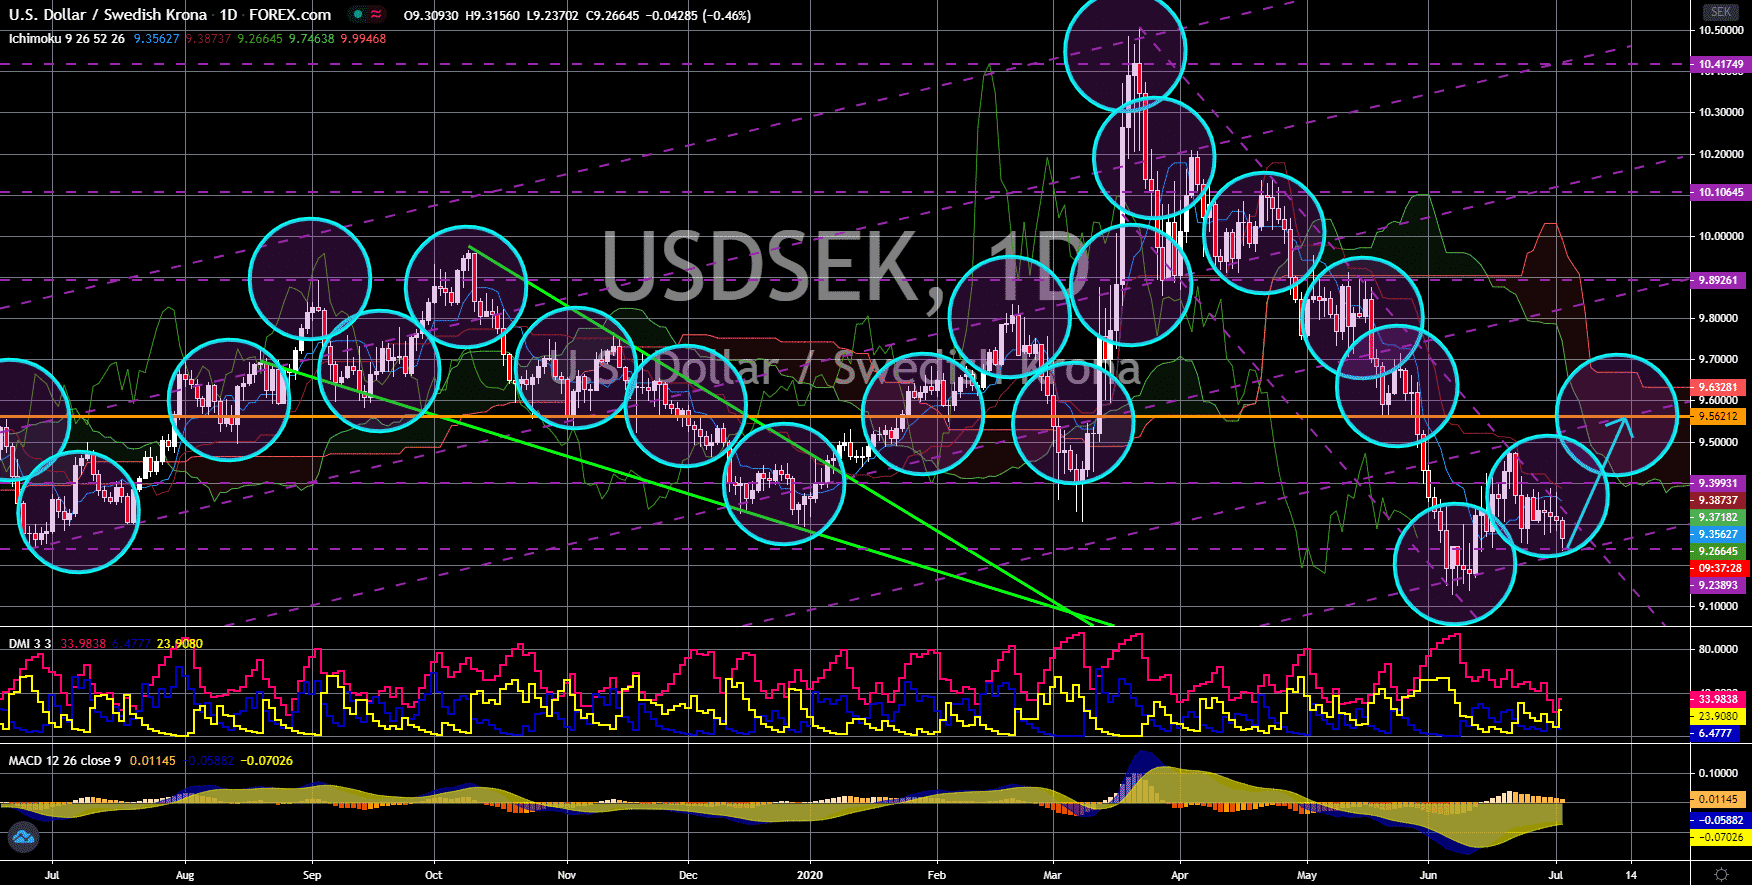 FinanceBrokerage - Noticias del mercado: Gráfico USD / SEK